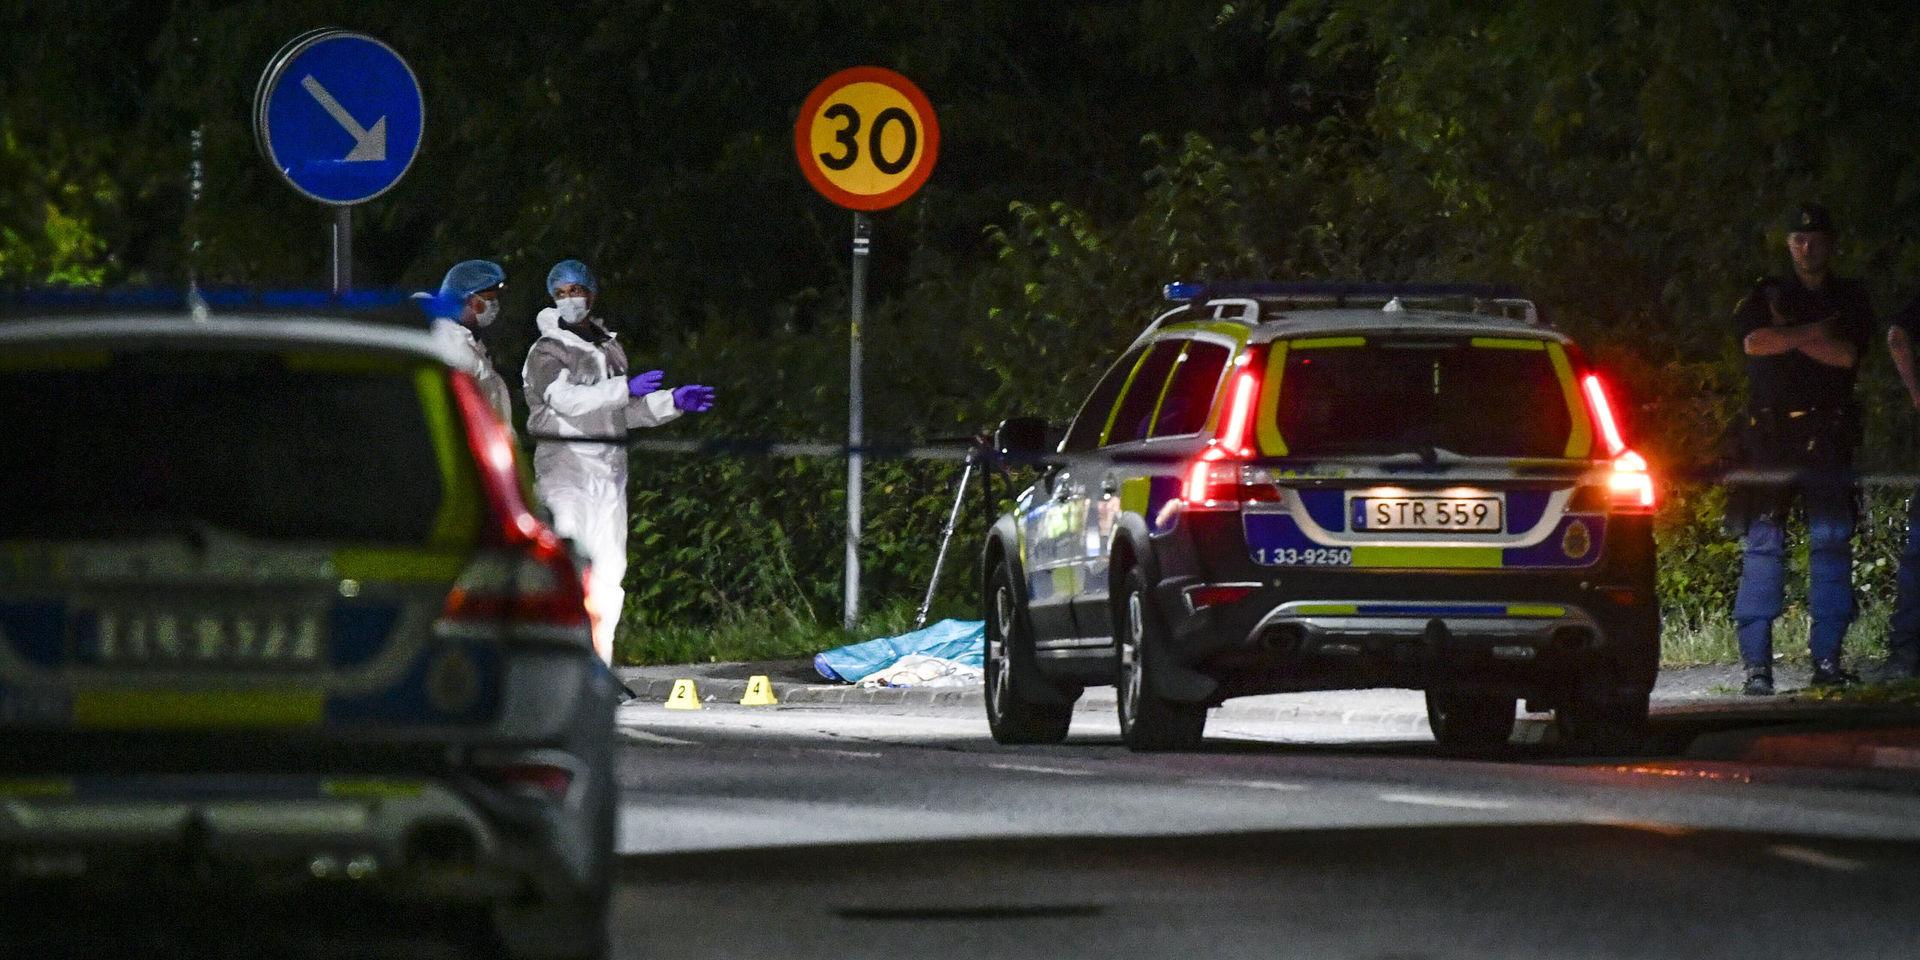 Polis och tekniker vid avspärrning i närheten av den plats i Stocksund strax norr om Stockholm där en man påträffades efter en skottlossning på måndagskvällen. Polisen har hittat hylsor på platsen och bedriver en förundersökning angående mord. 